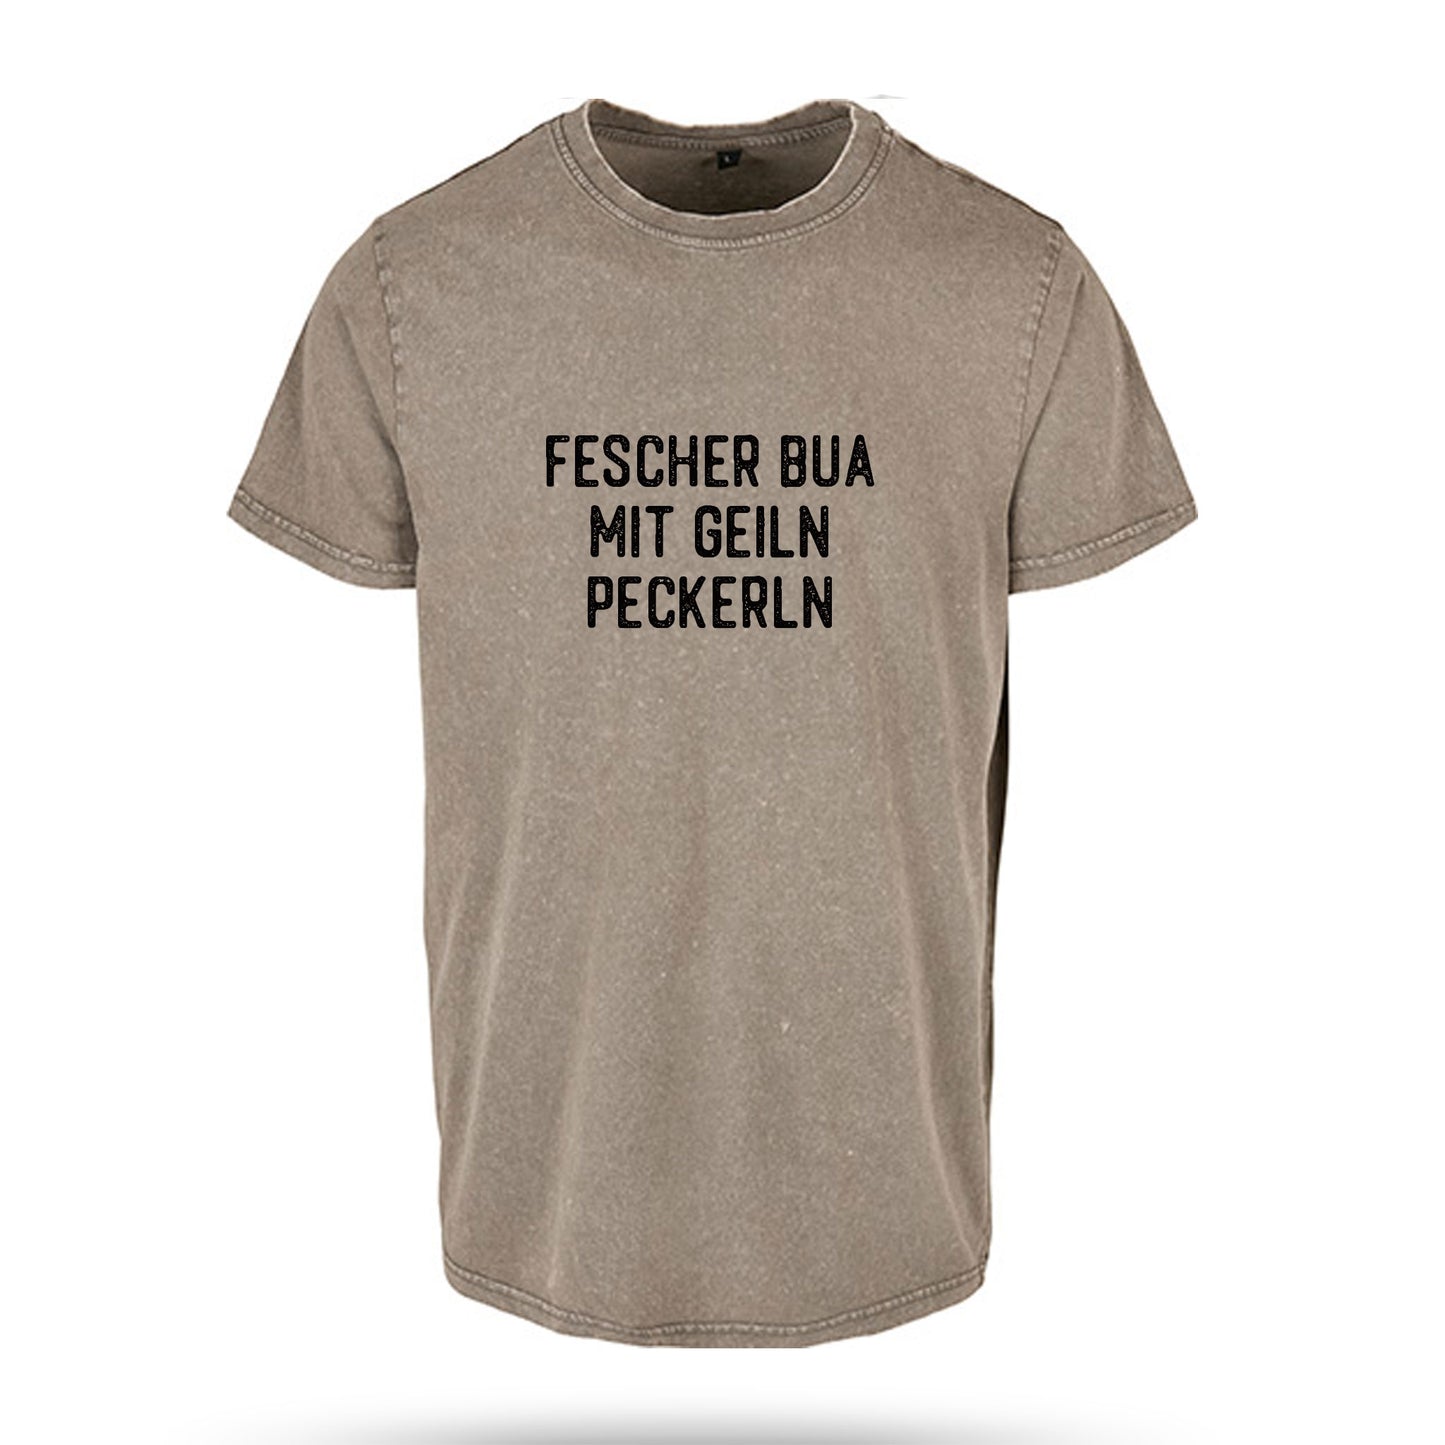 KIRCHTAG T-Shirt Fescher Bua mit geiln Peckerln